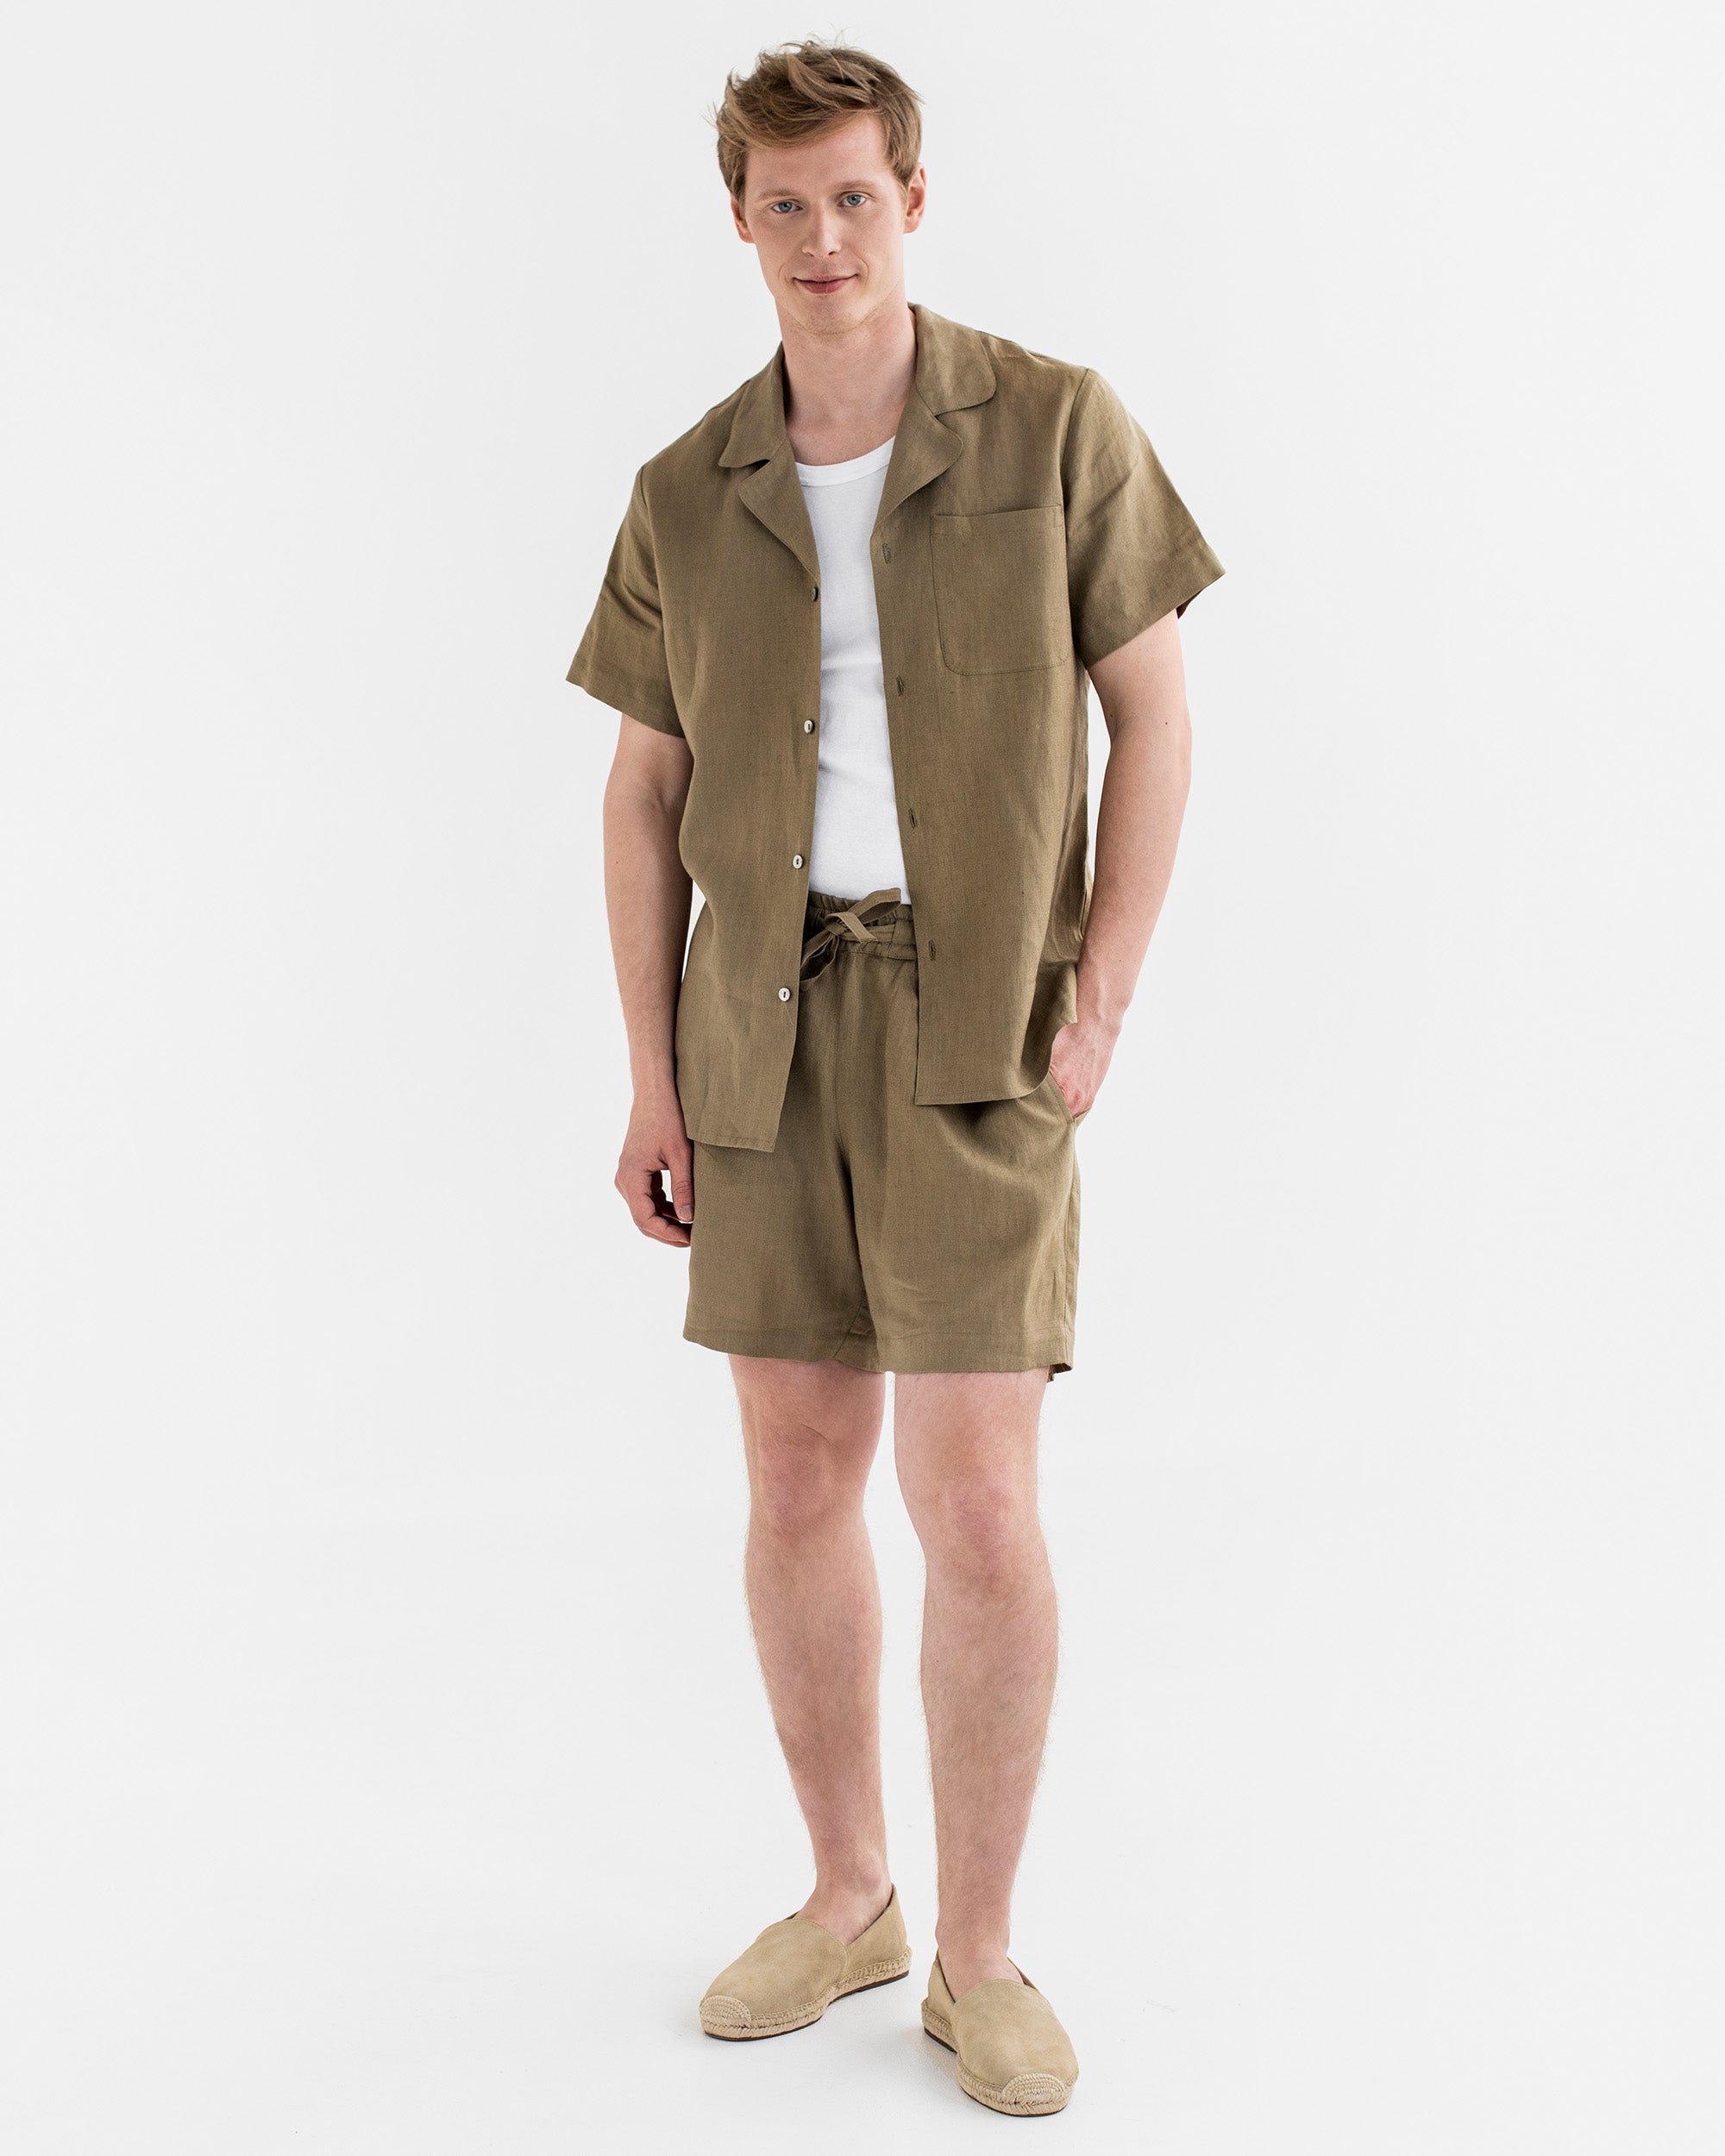 Men's Linen Loungewear Set TINOS in Dried Moss | MagicLinen